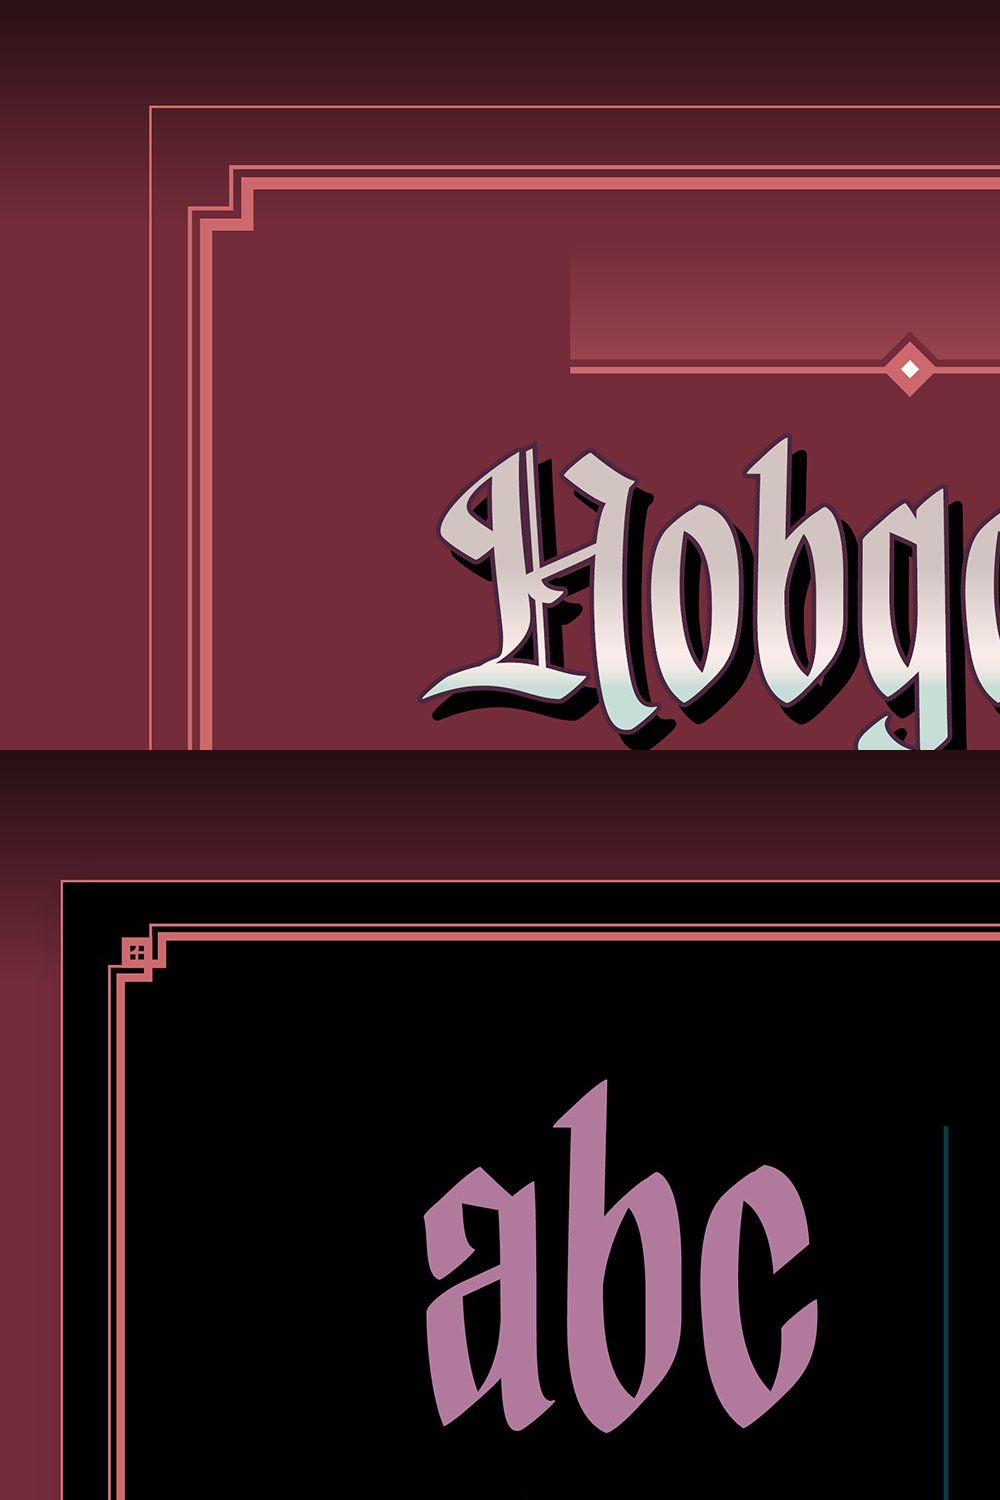 Hobgoblin - fantasy font pinterest preview image.